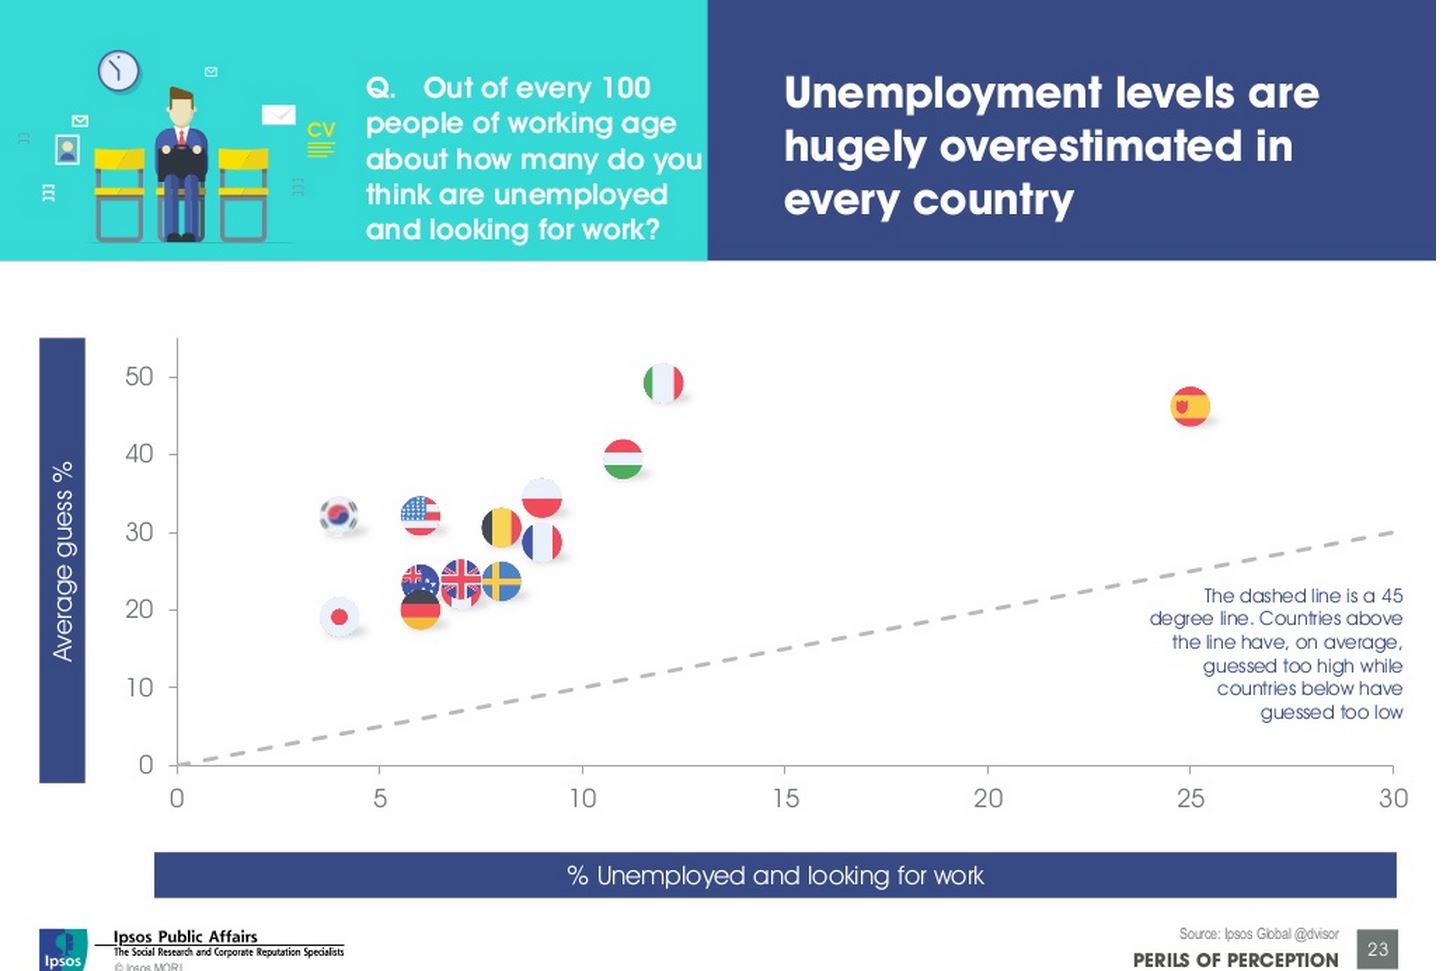 La percentuale di disoccupati percepita è maggiore del dato reale (Fonte:  http://www.slideshare.net/fullscreen/IpsosMORI/perils-of-perception-global/23)